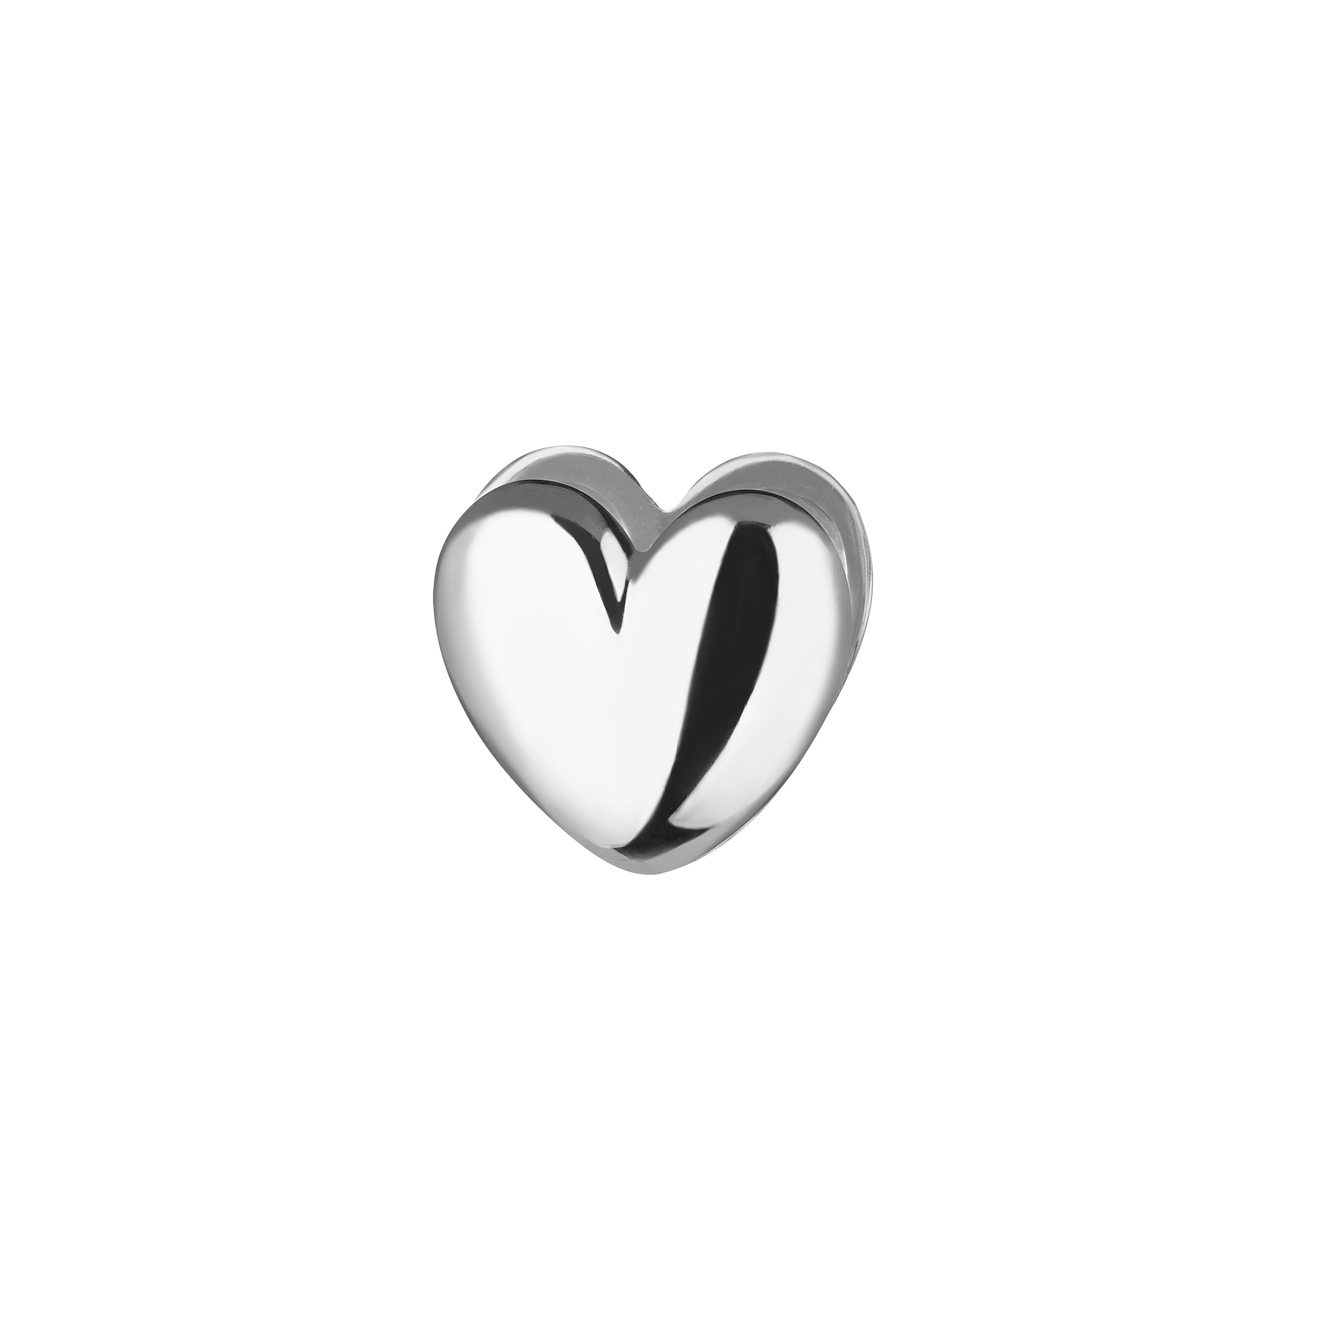 Ms. Marble Моносерьга-сердце Prem из серебра ms marble подвеска affirmation на цепочке из серебра